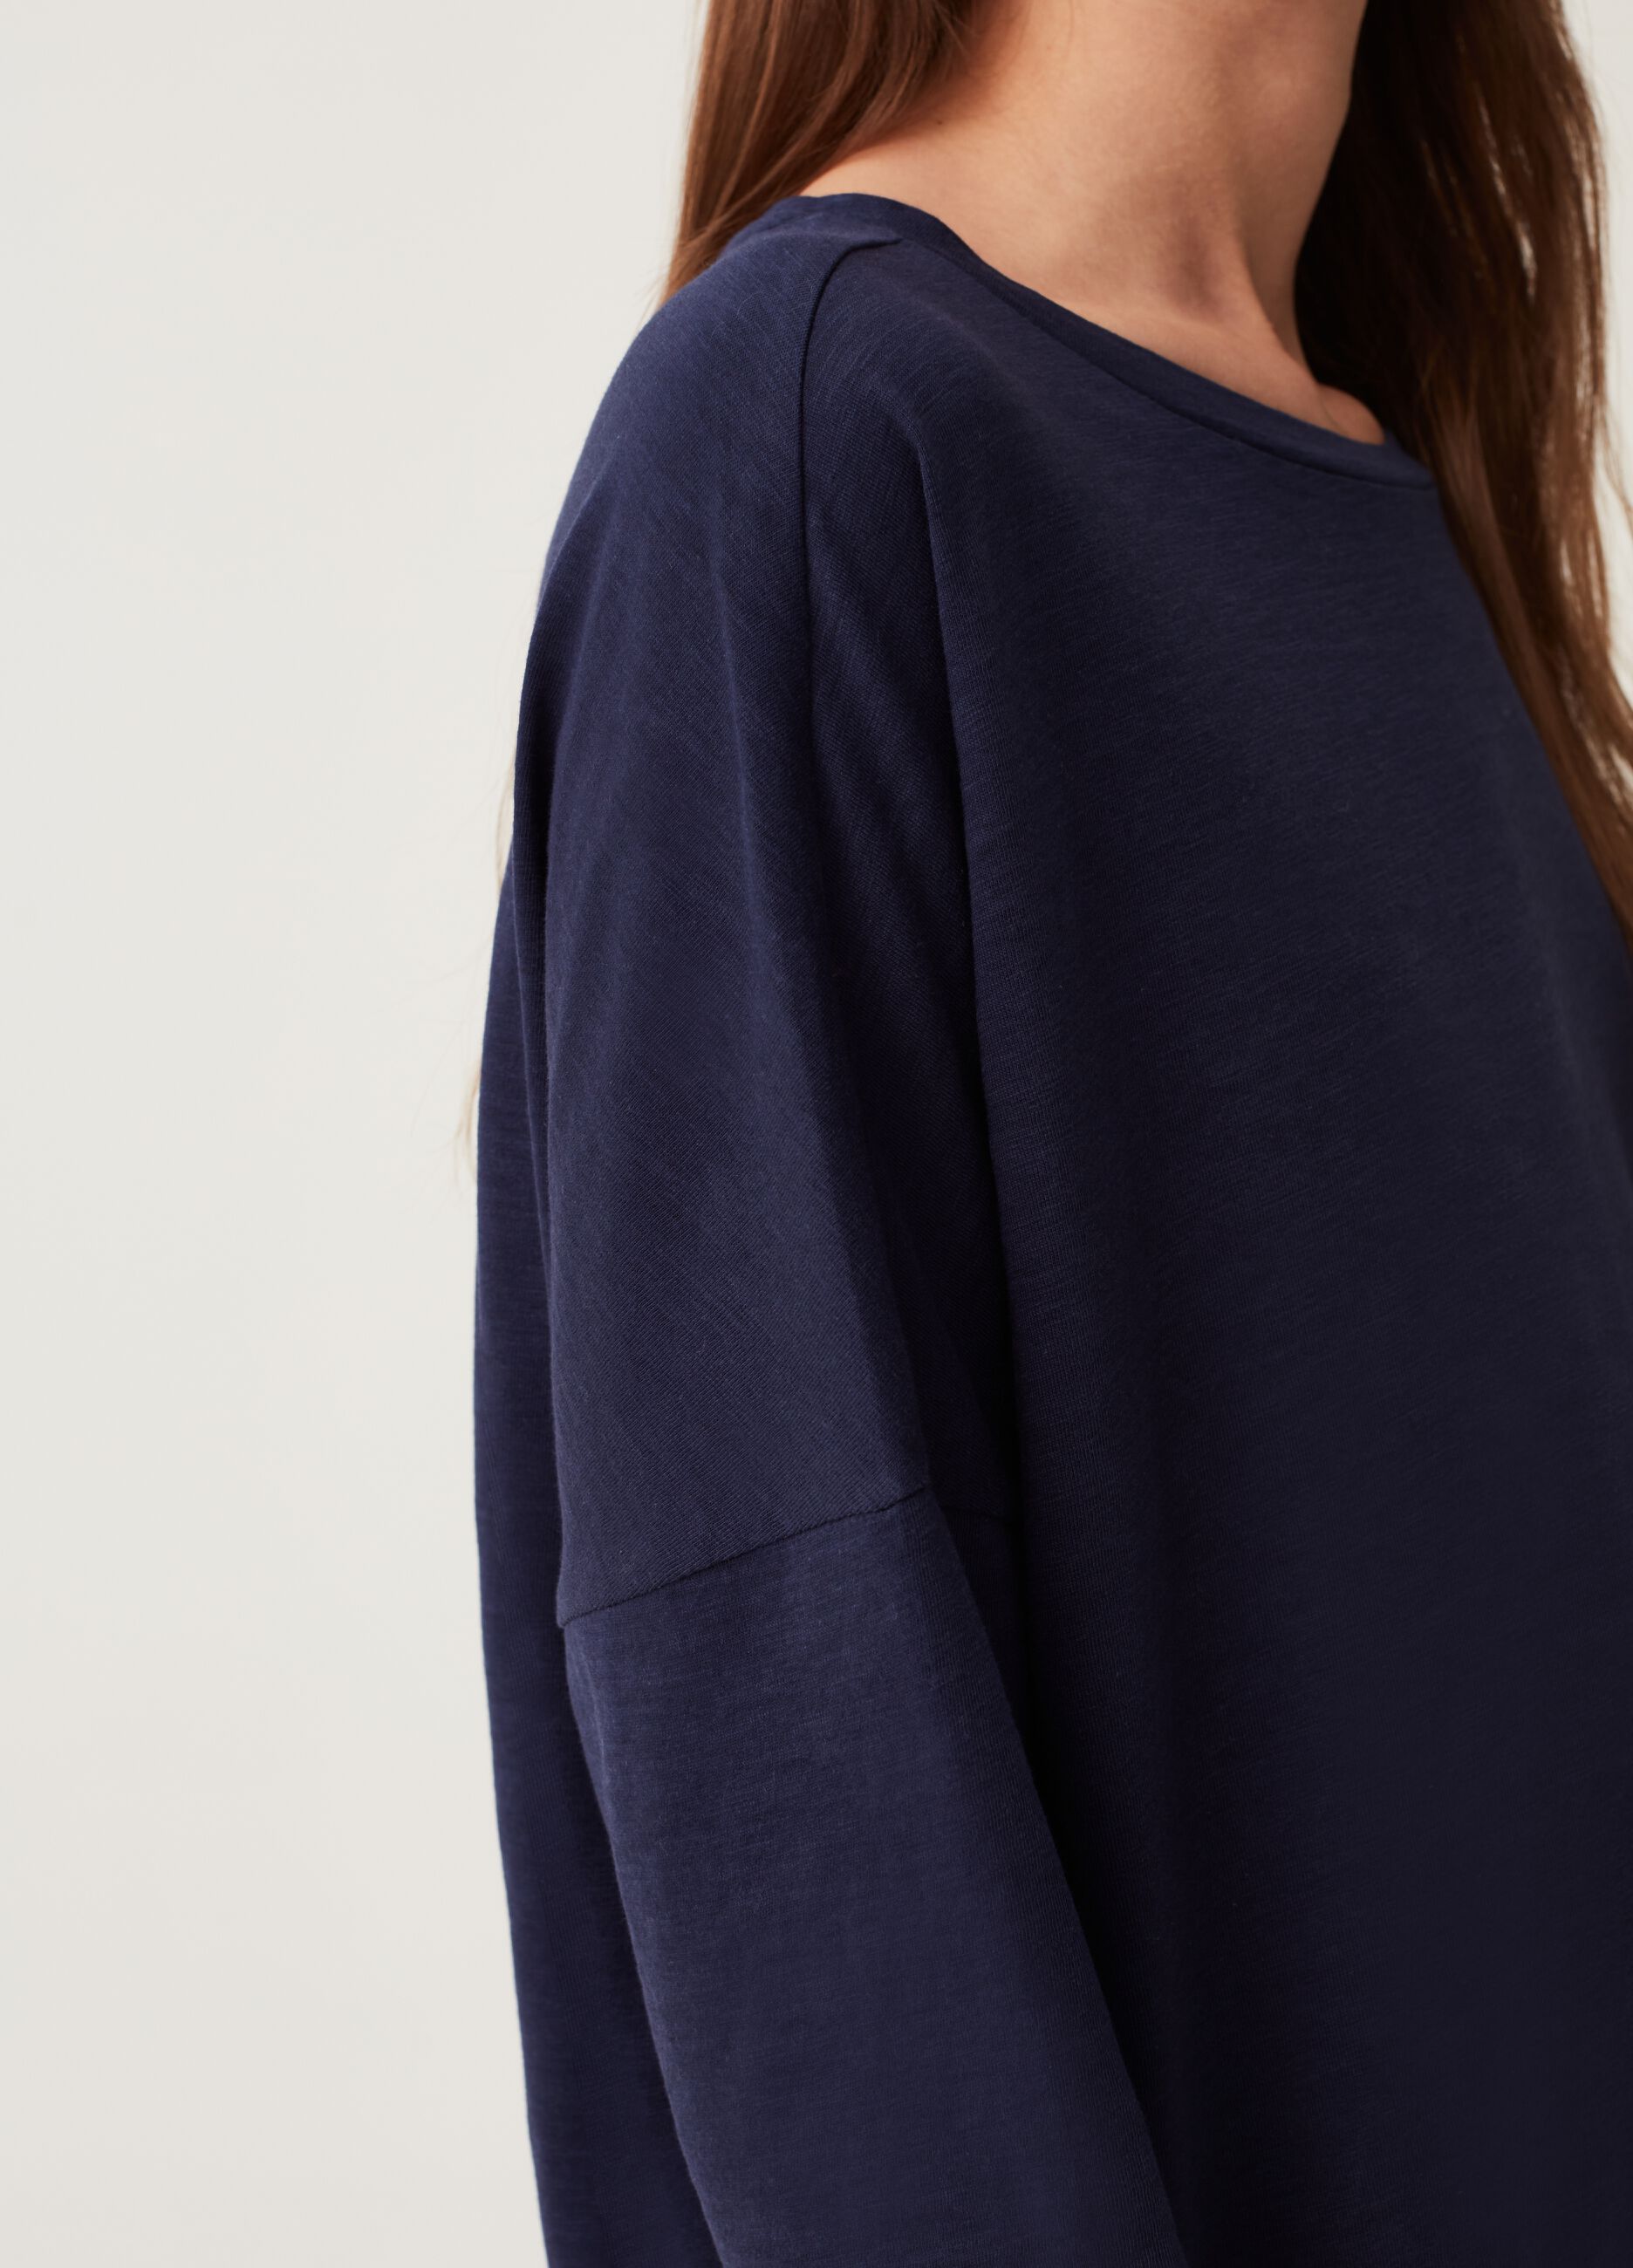 Sykooria Womens Shirt XL Blue Lounge Wear Soft Long Sleeve Velour A14